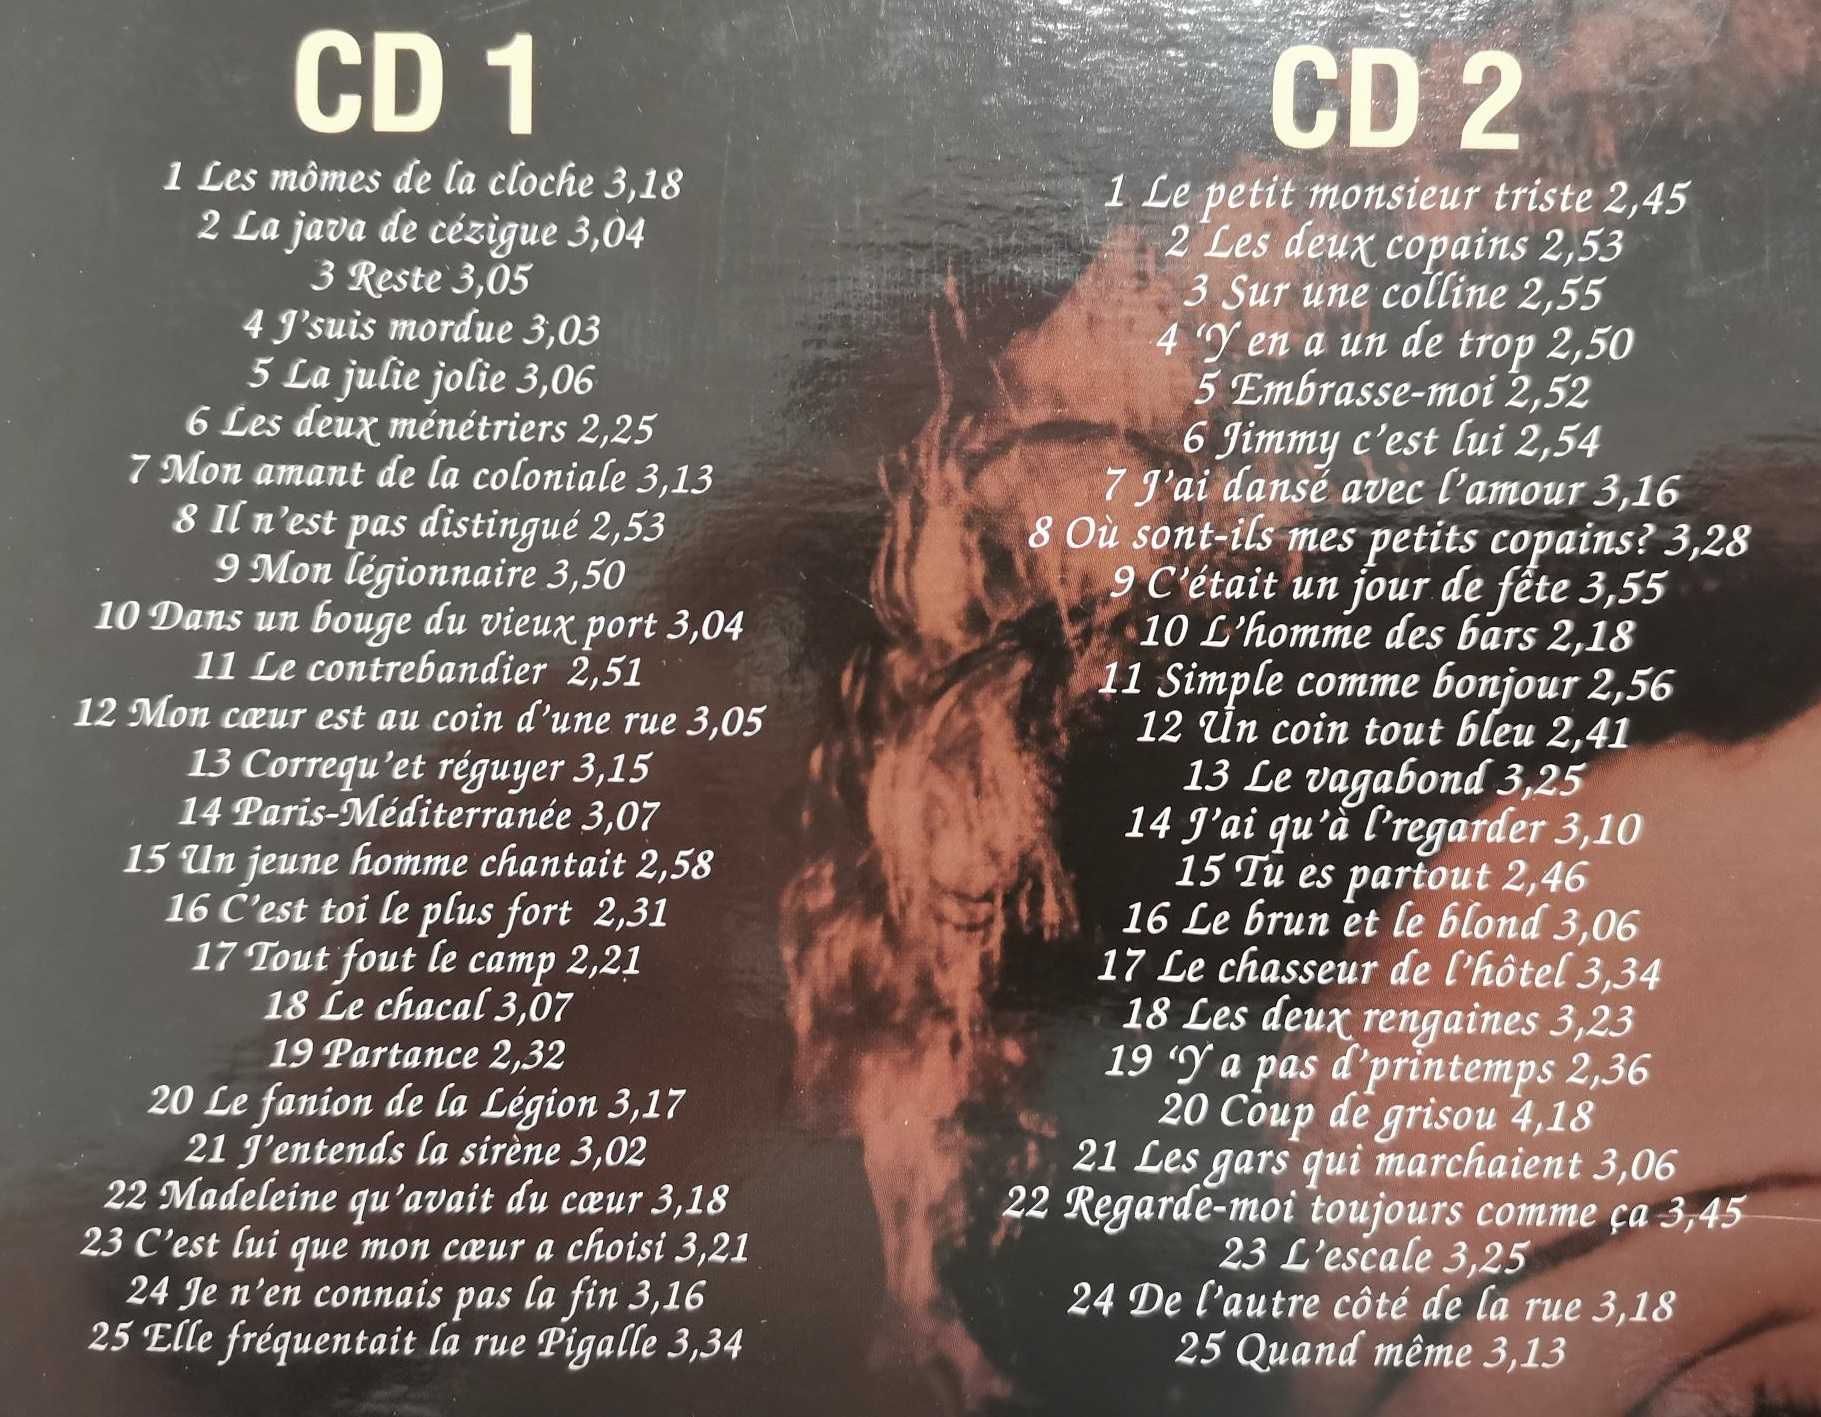 Colectânea de 4 CD's Édith Piaf 100 Chansons